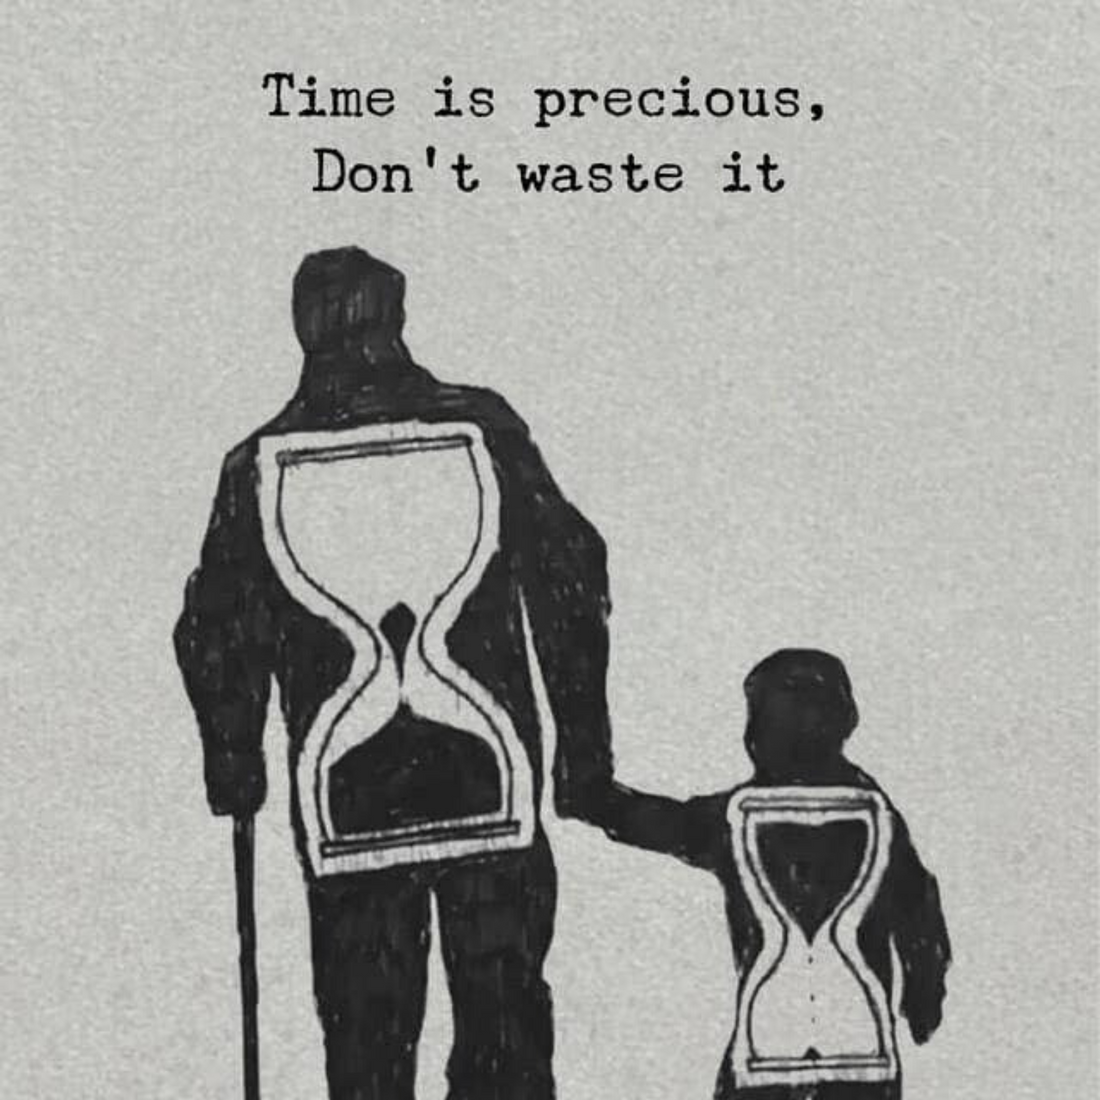 Don't waste it 🙏💜